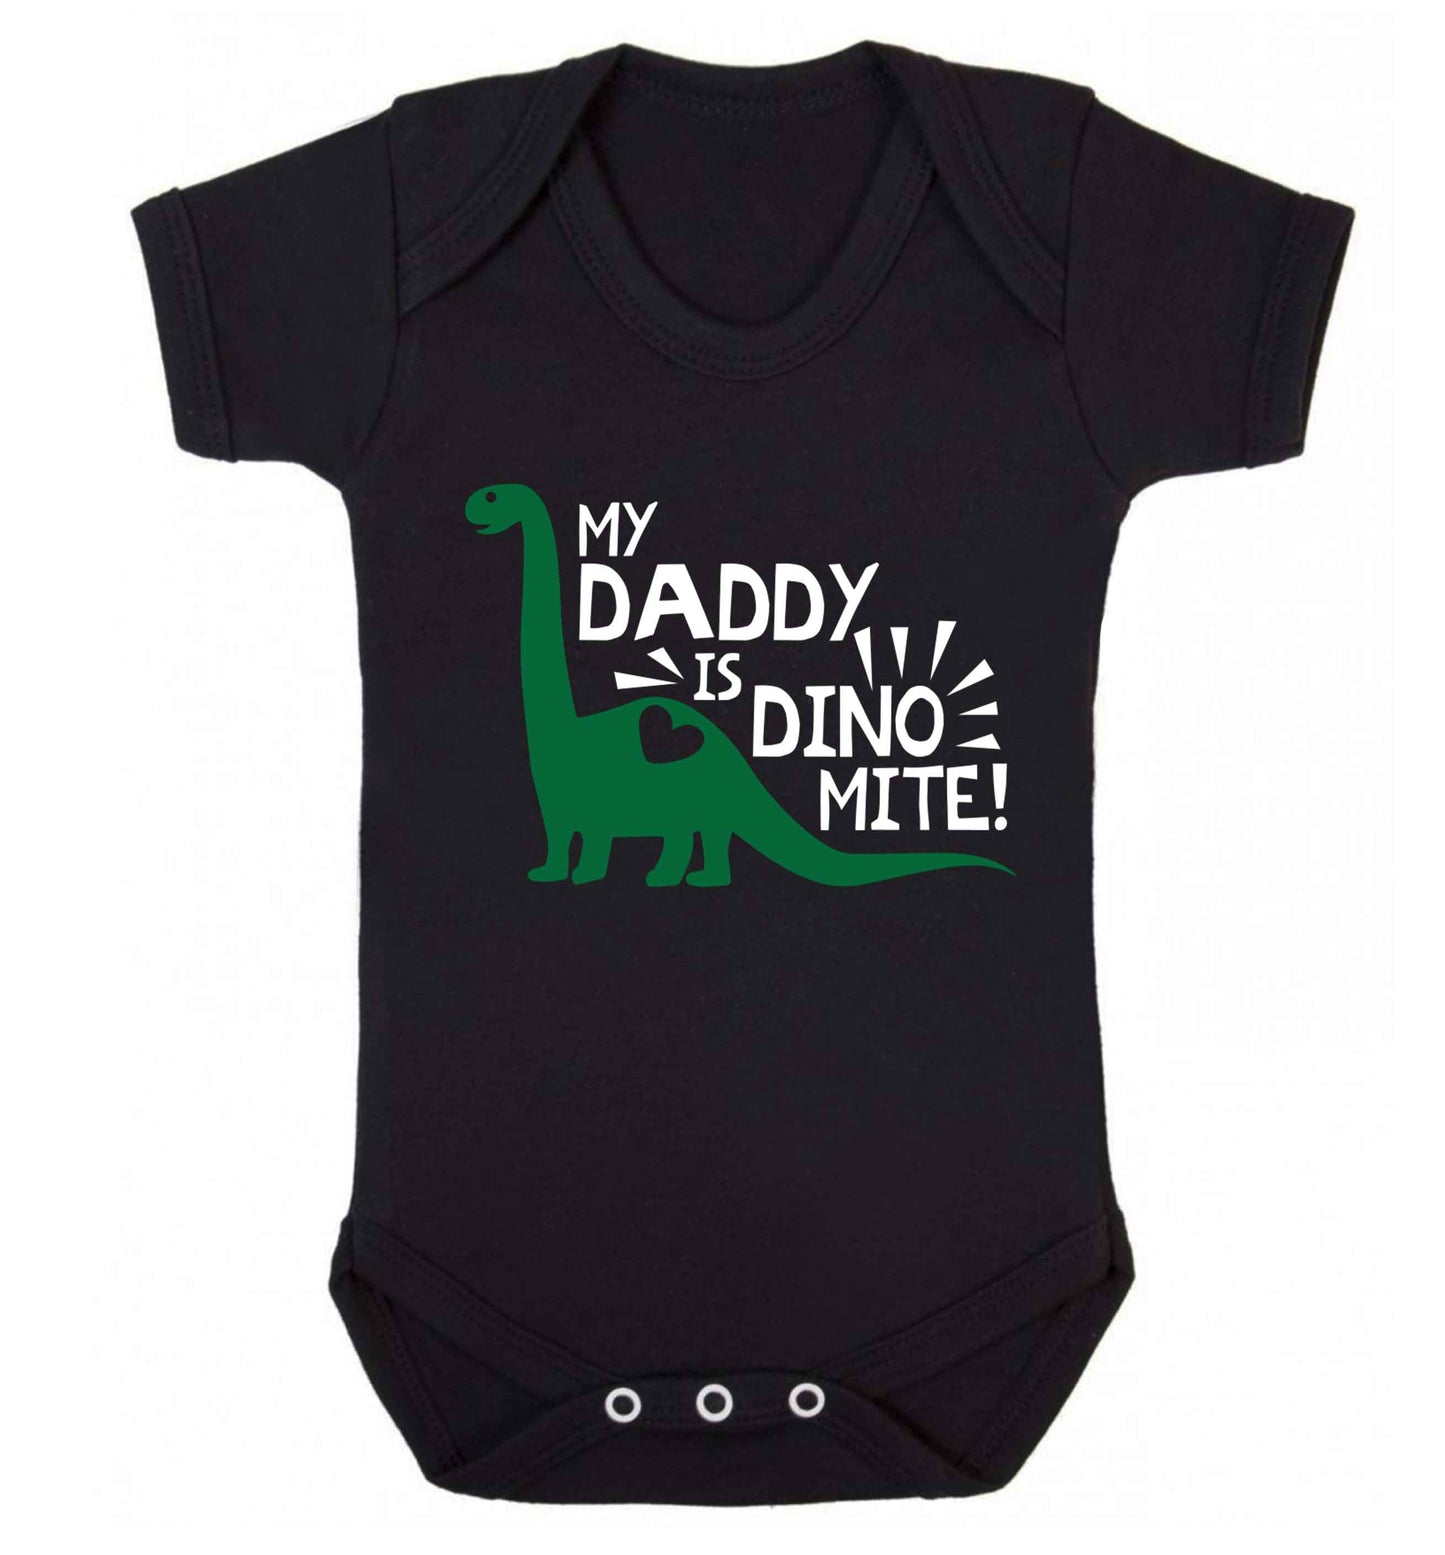 My daddy is dinomite! Baby Vest black 18-24 months